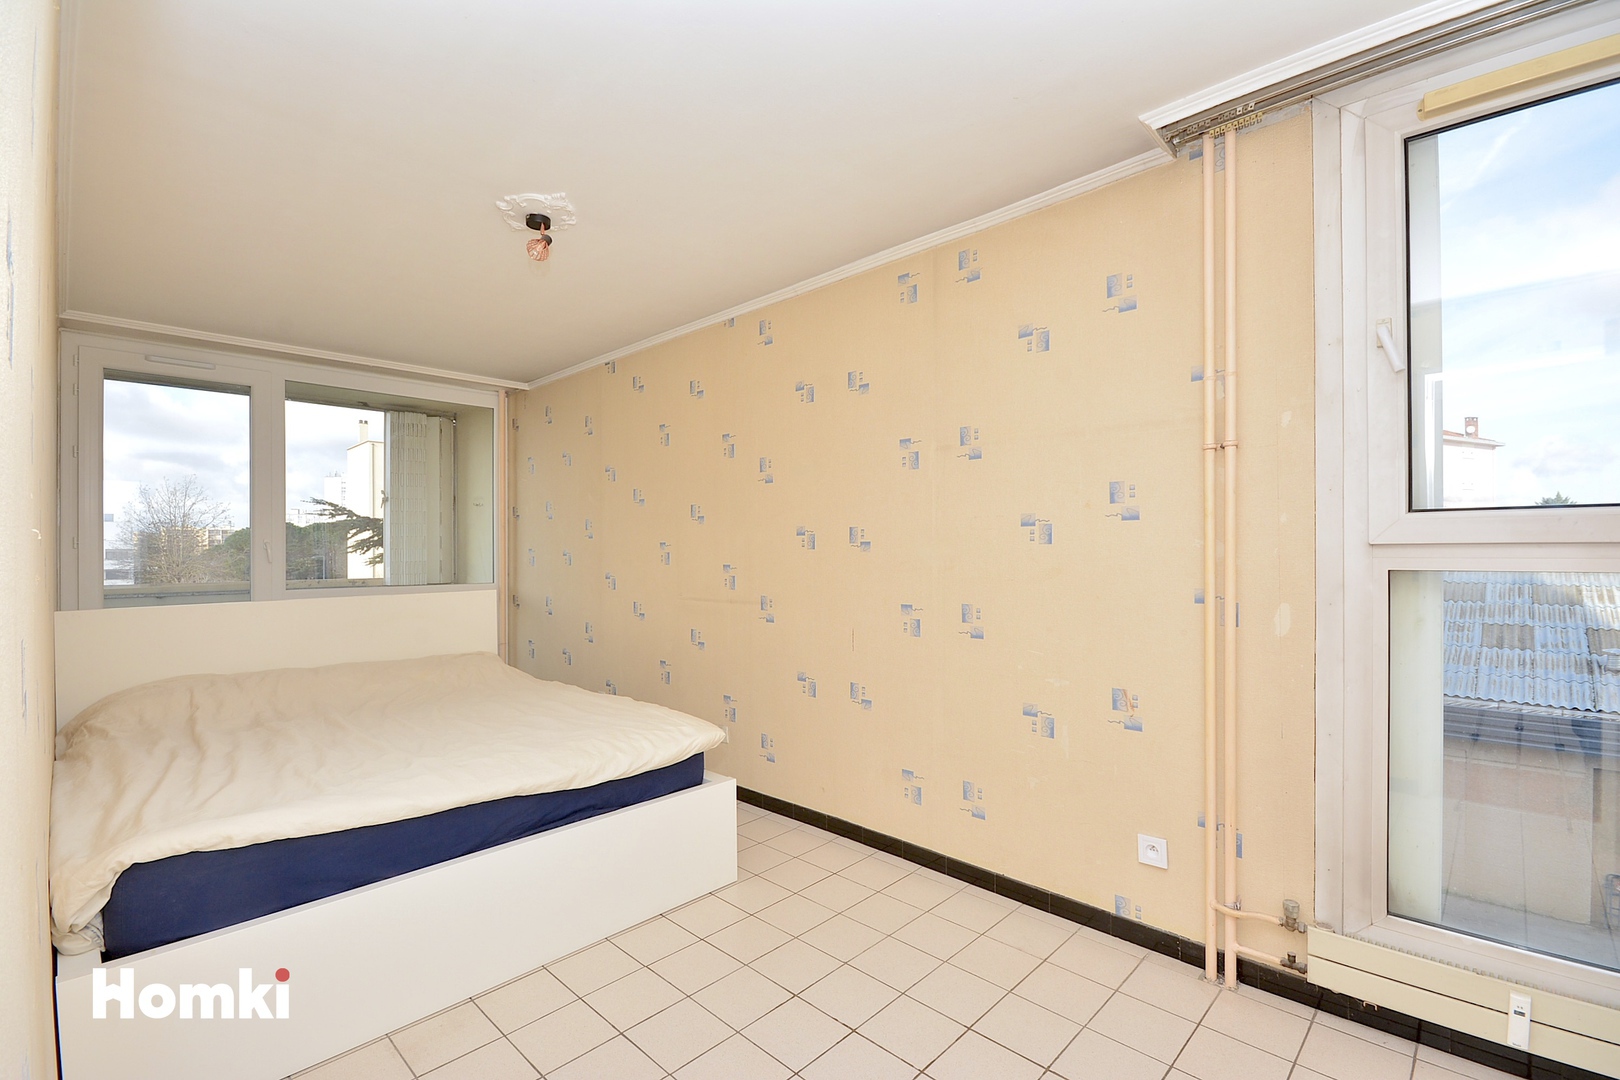 Homki - Vente Appartement  de 78.0 m² à Villeurbanne 69100